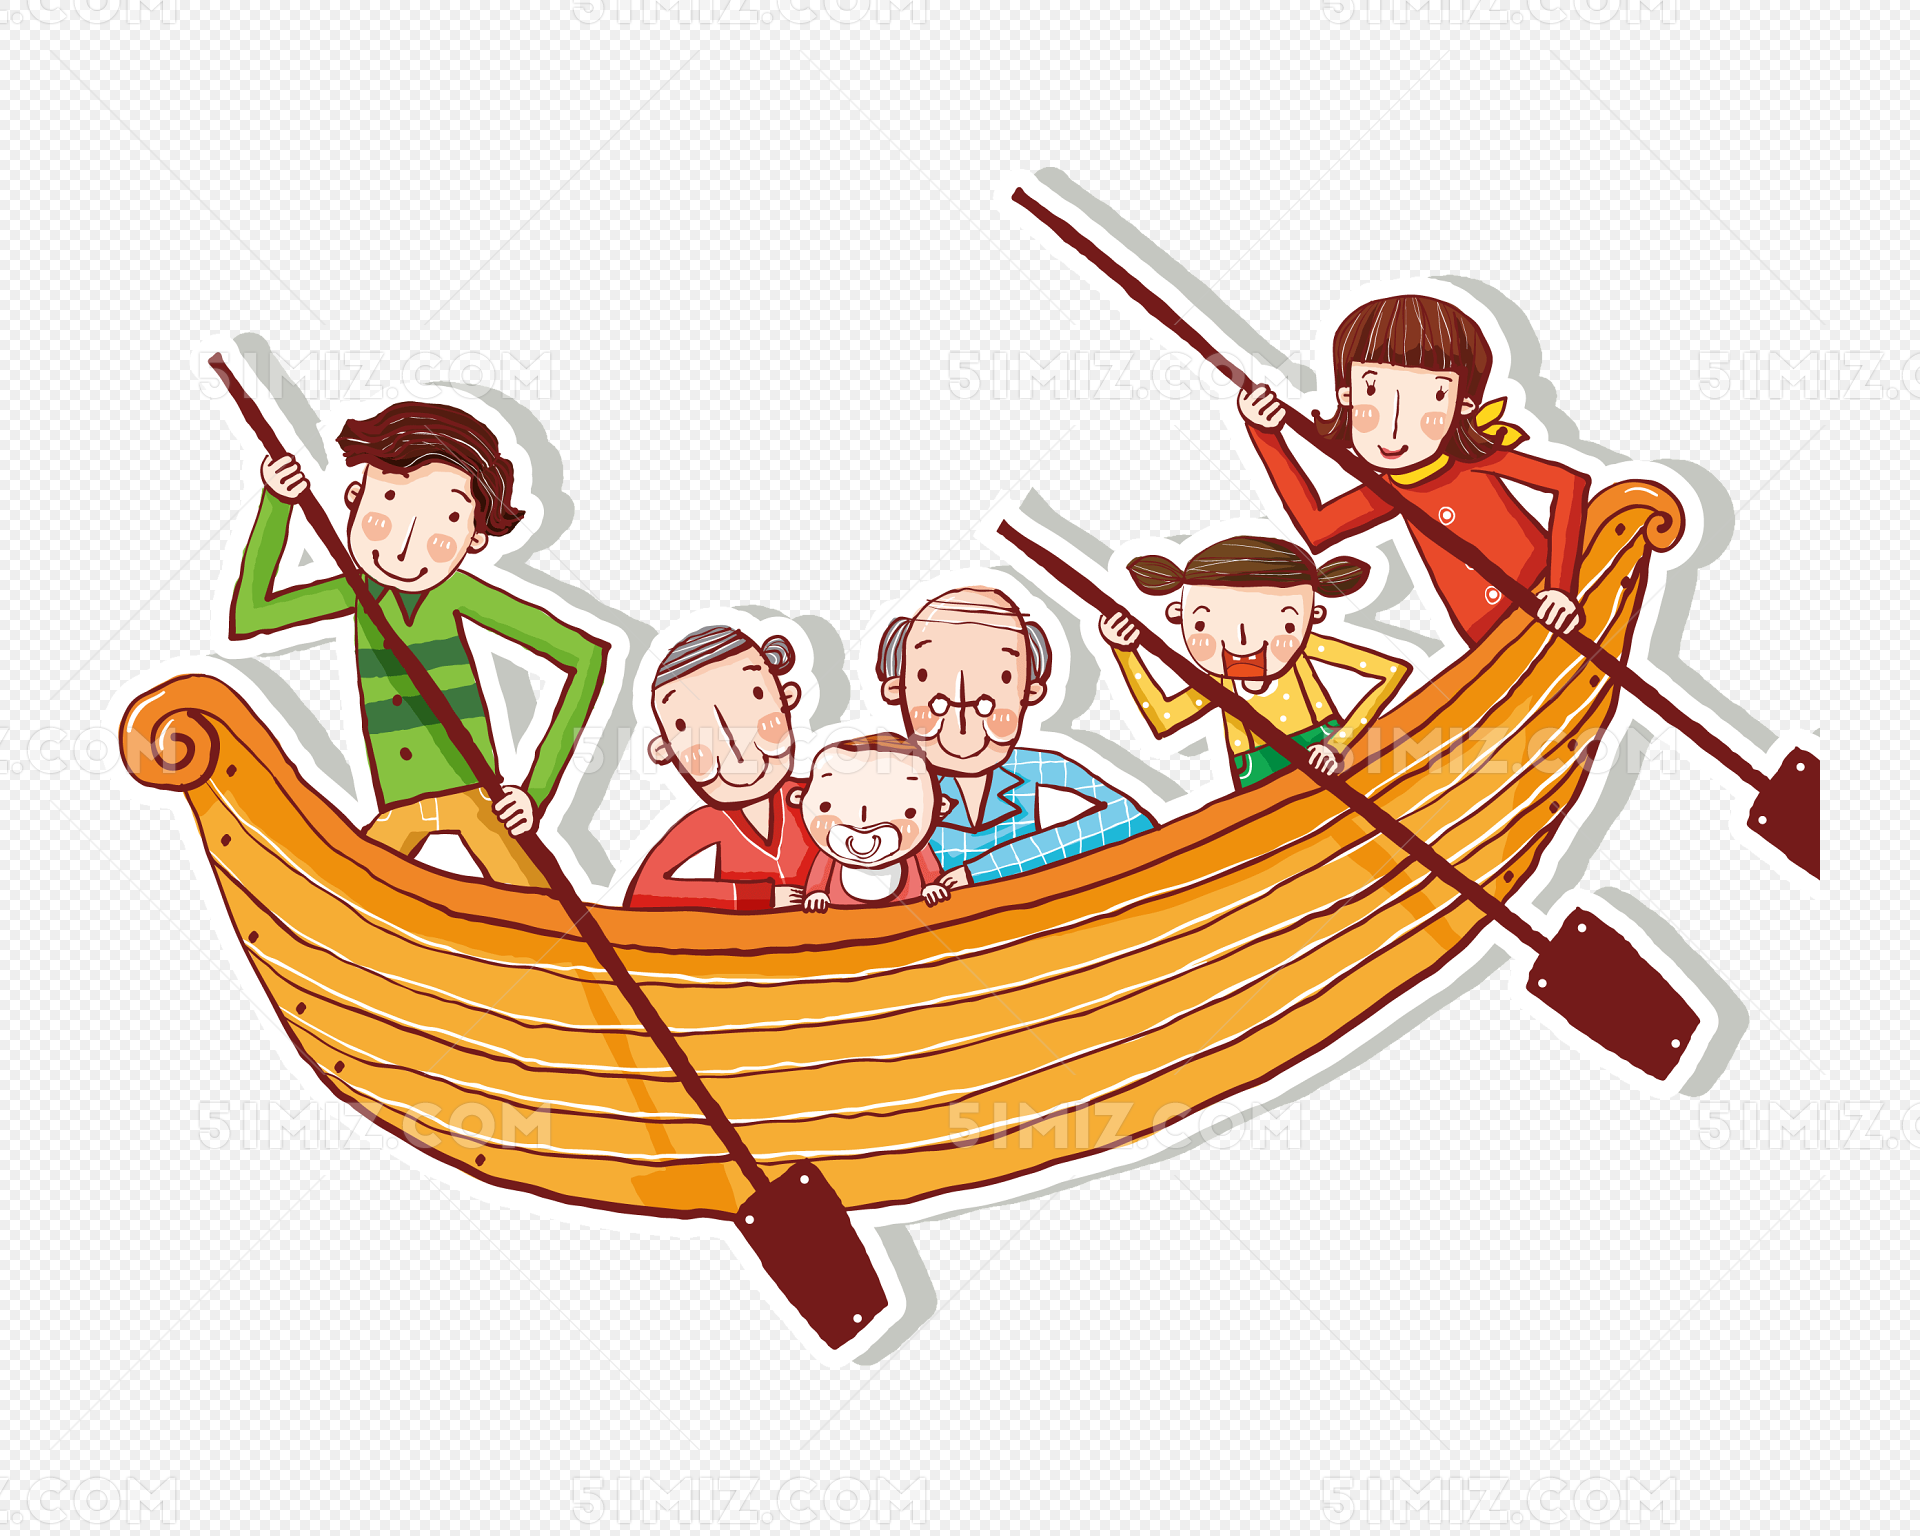 幸福的家人乘船航行 库存照片. 图片 包括有 系列, 子项, 游艇, 父亲, 行程, 风帆, 野餐, 男人 - 196198714